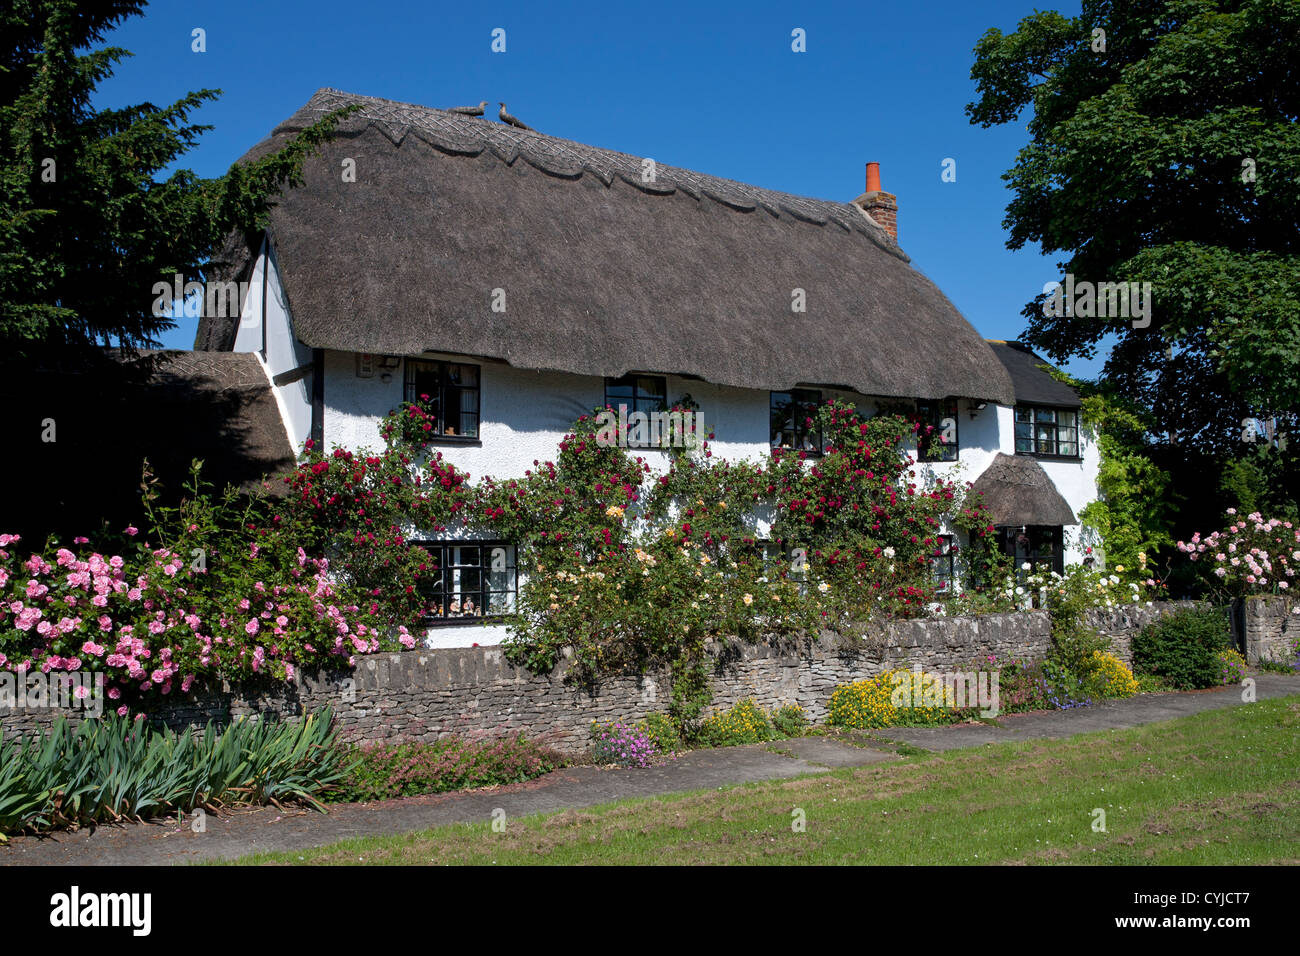 Piuttosto tipico inglese cottage con il tetto di paglia coperto in estate le rose, Oxford, Inghilterra Foto Stock